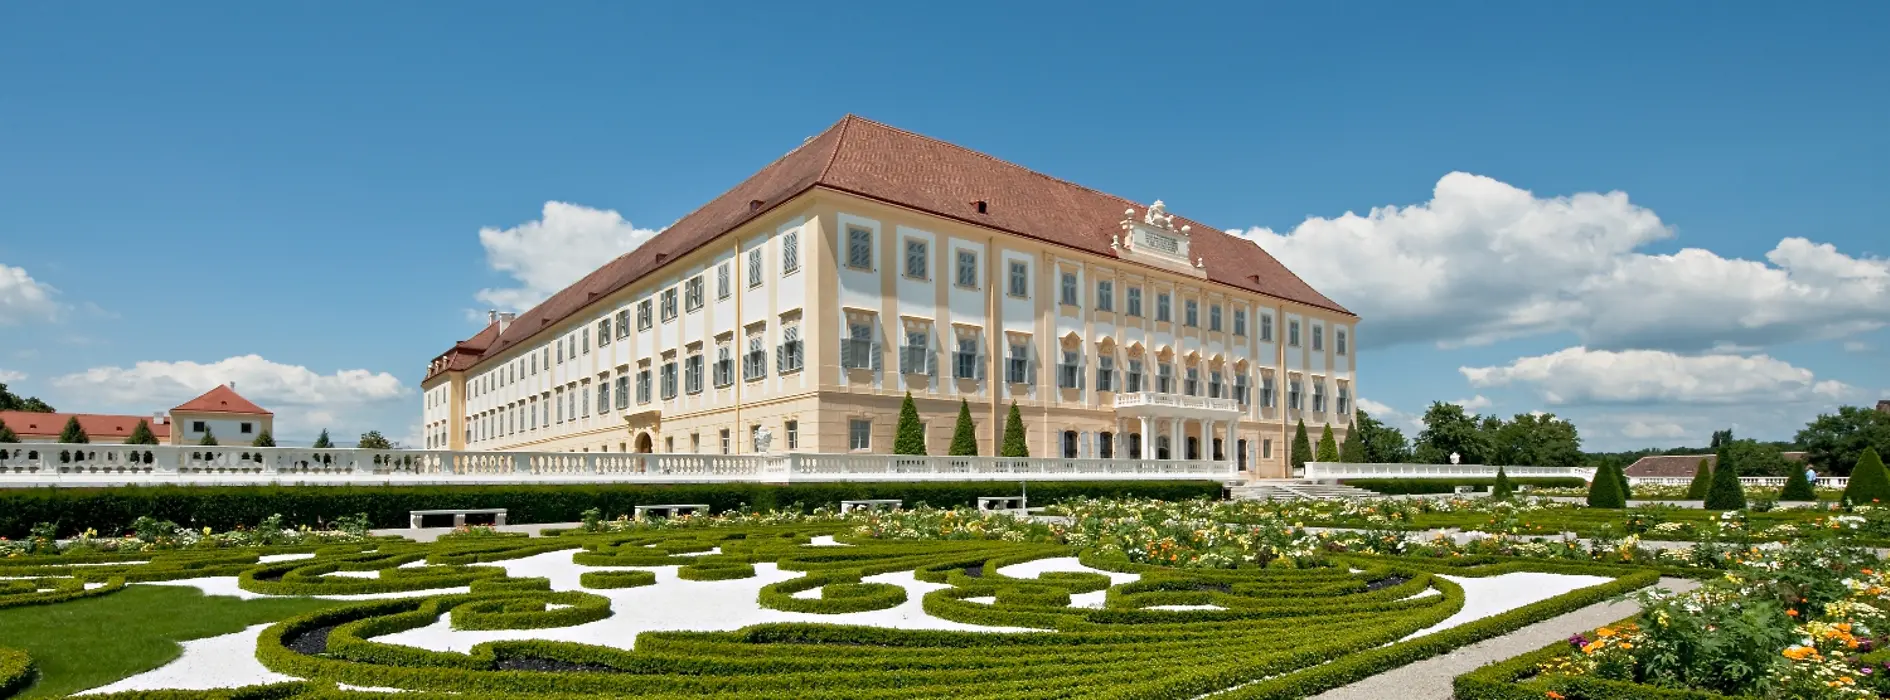 Vista lateral del Palacio Hof